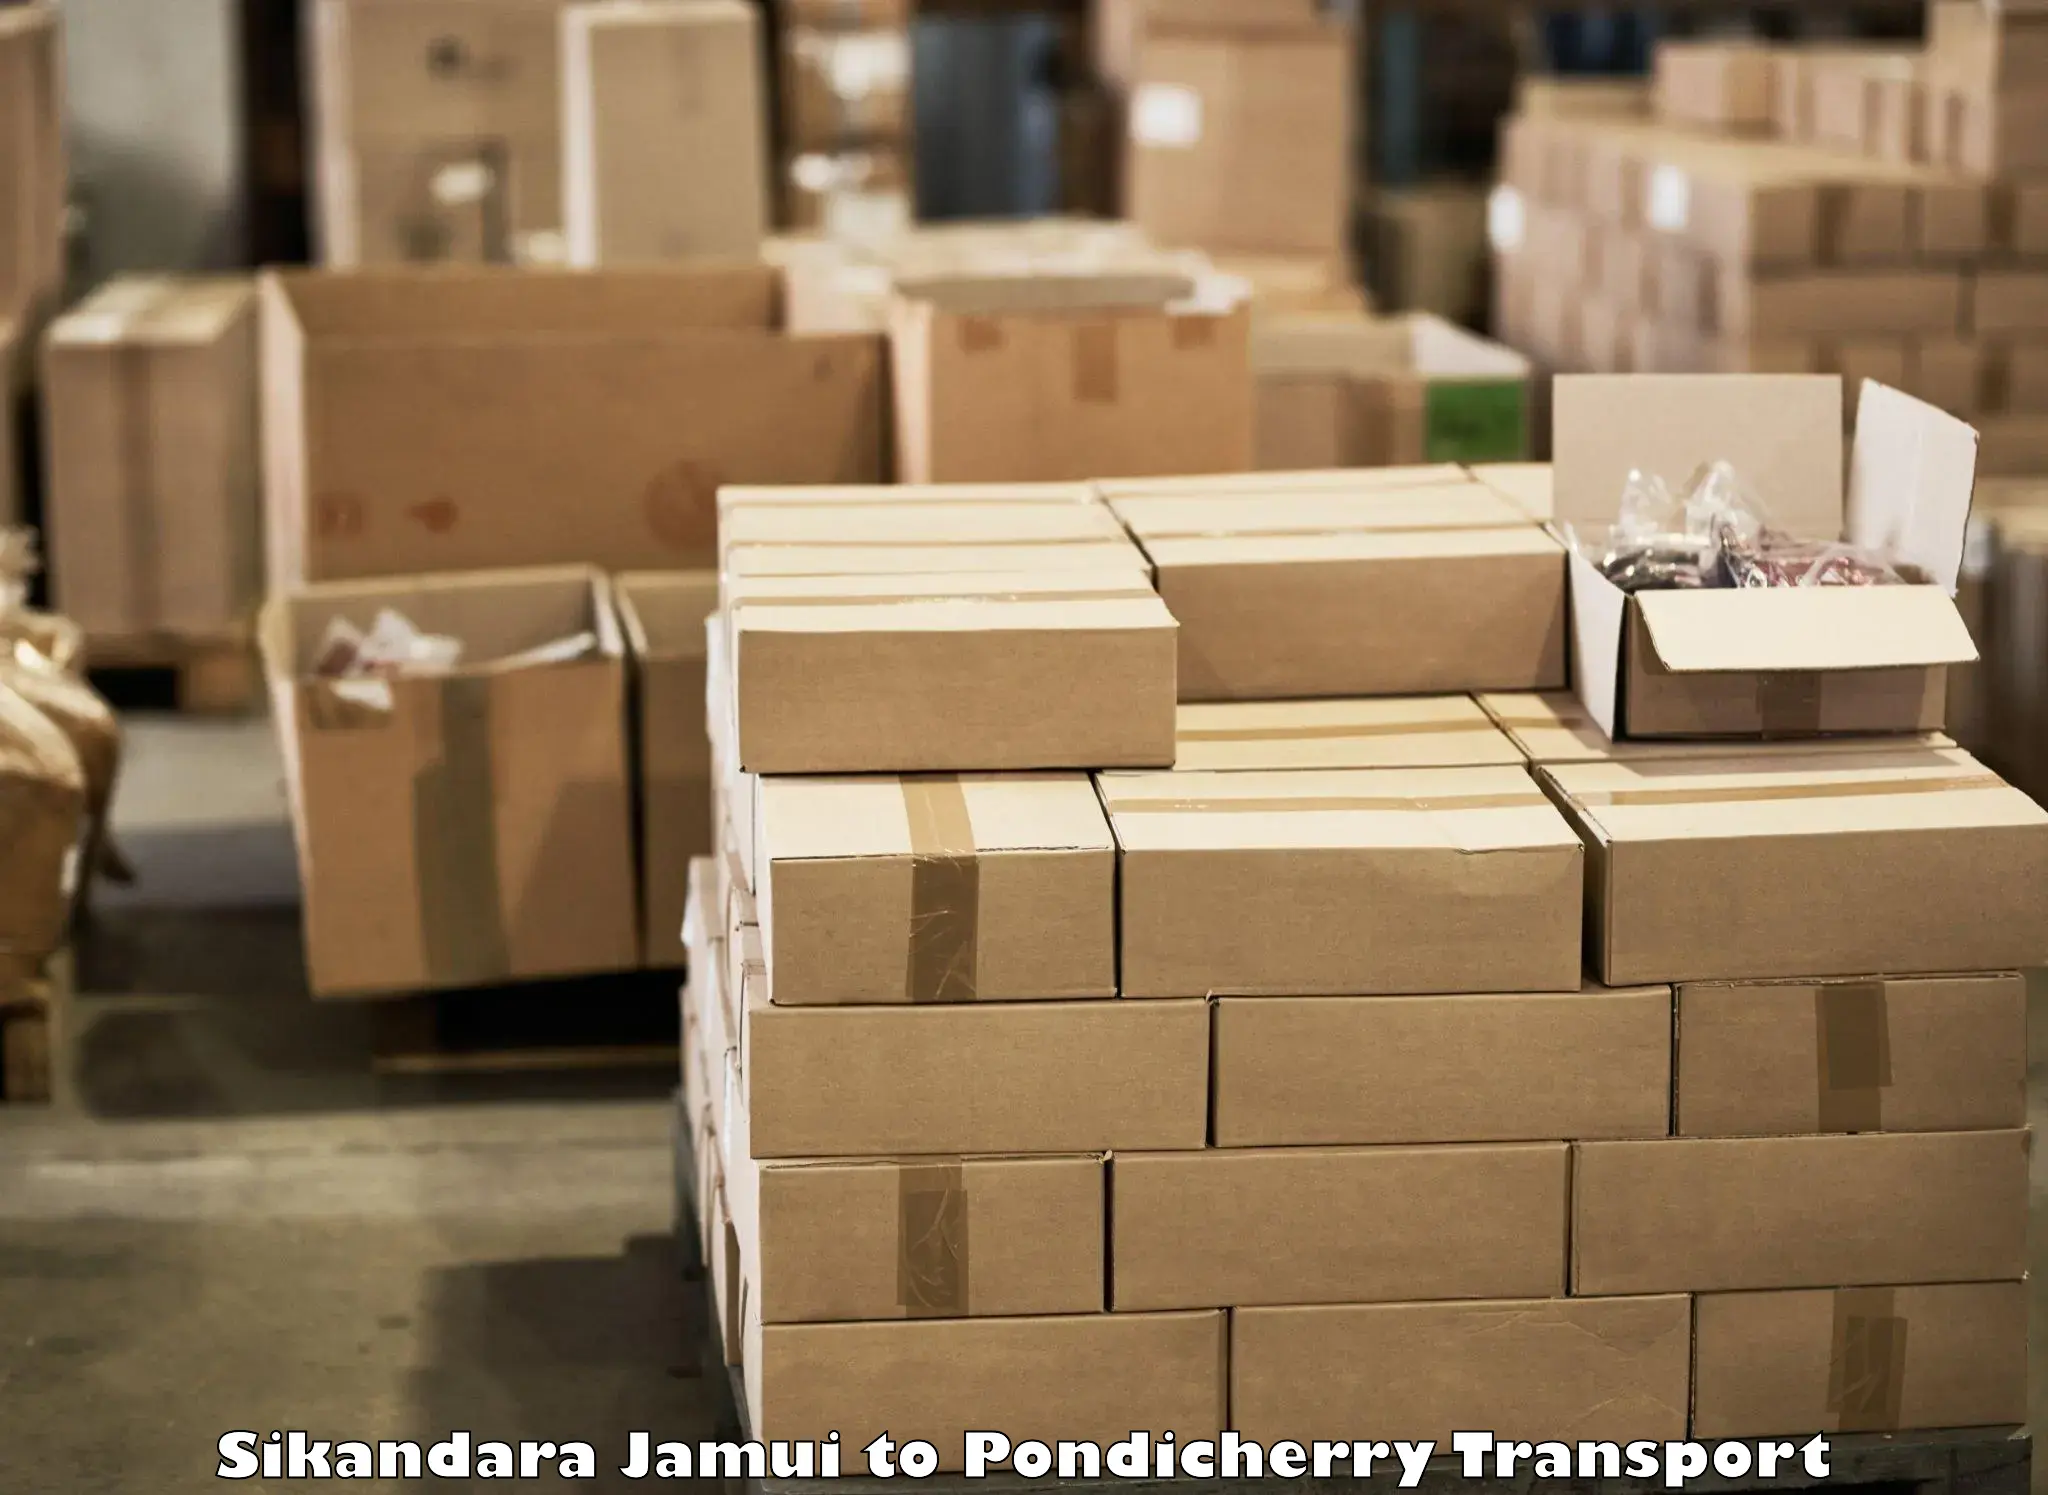 Transport in sharing Sikandara Jamui to Pondicherry